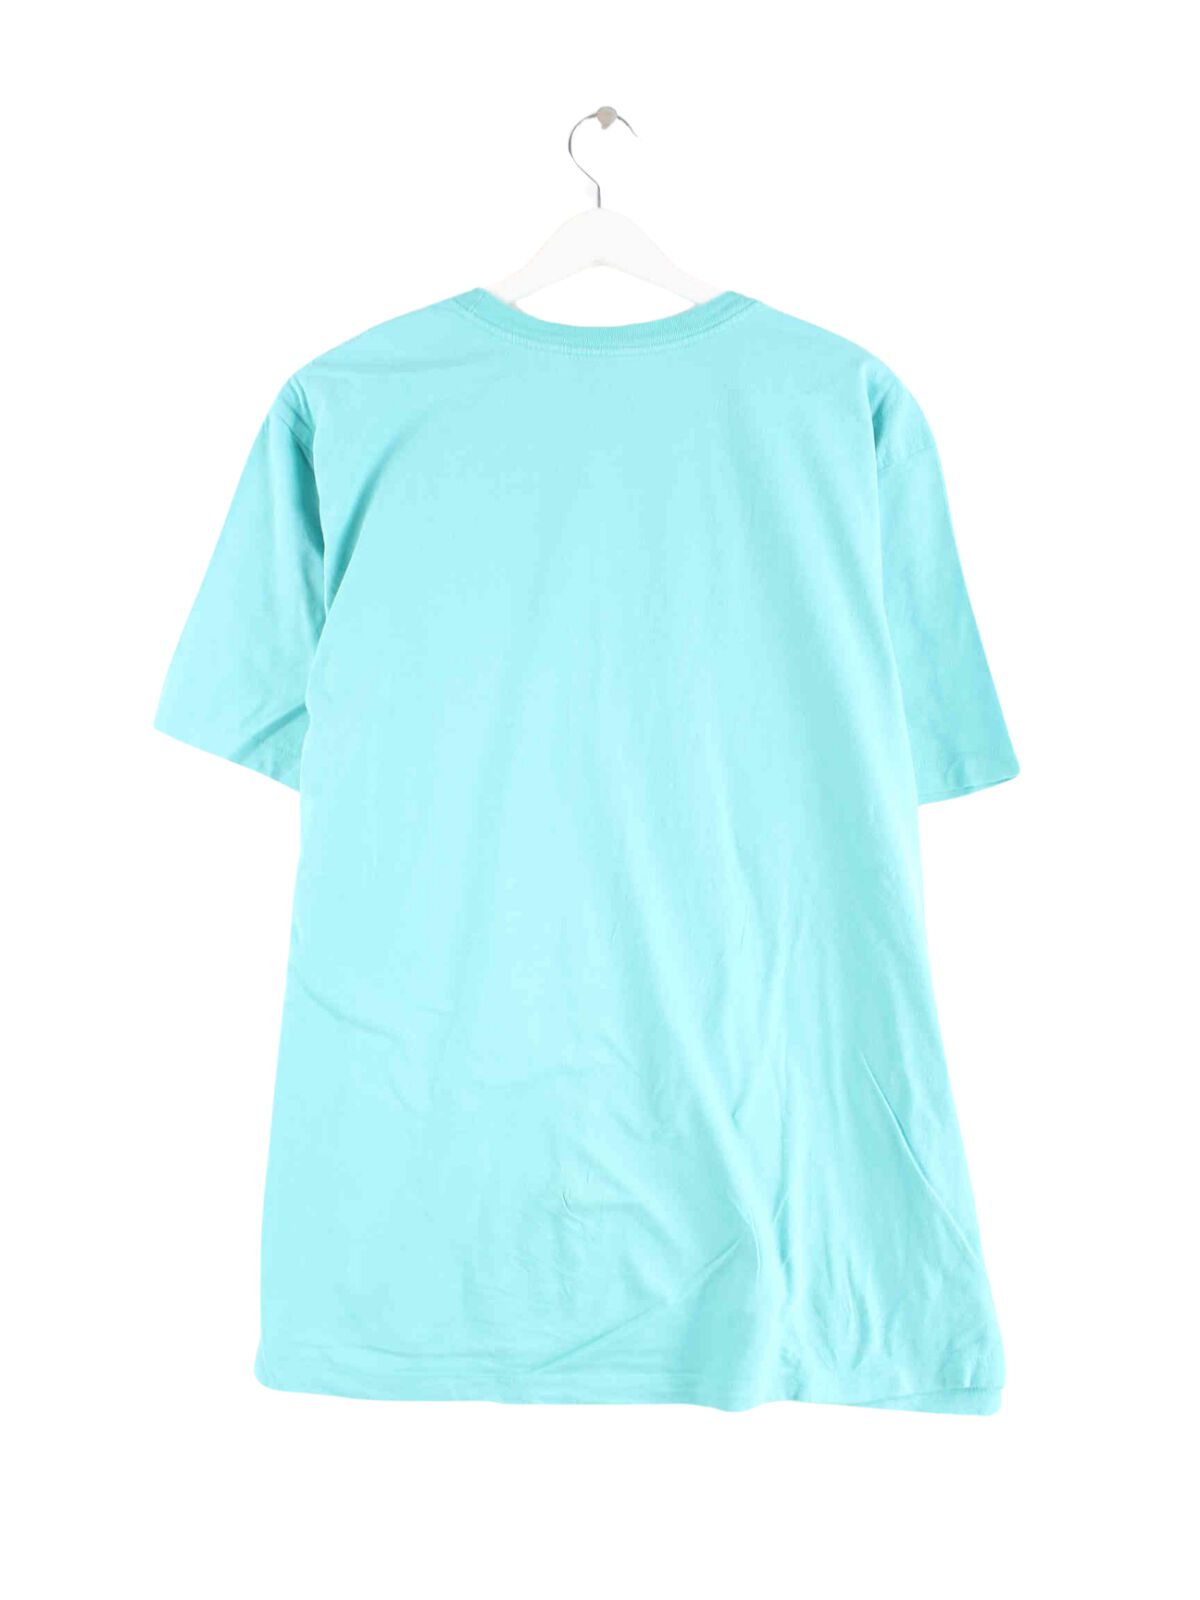 Nike Print T-Shirt Blau XL (back image)